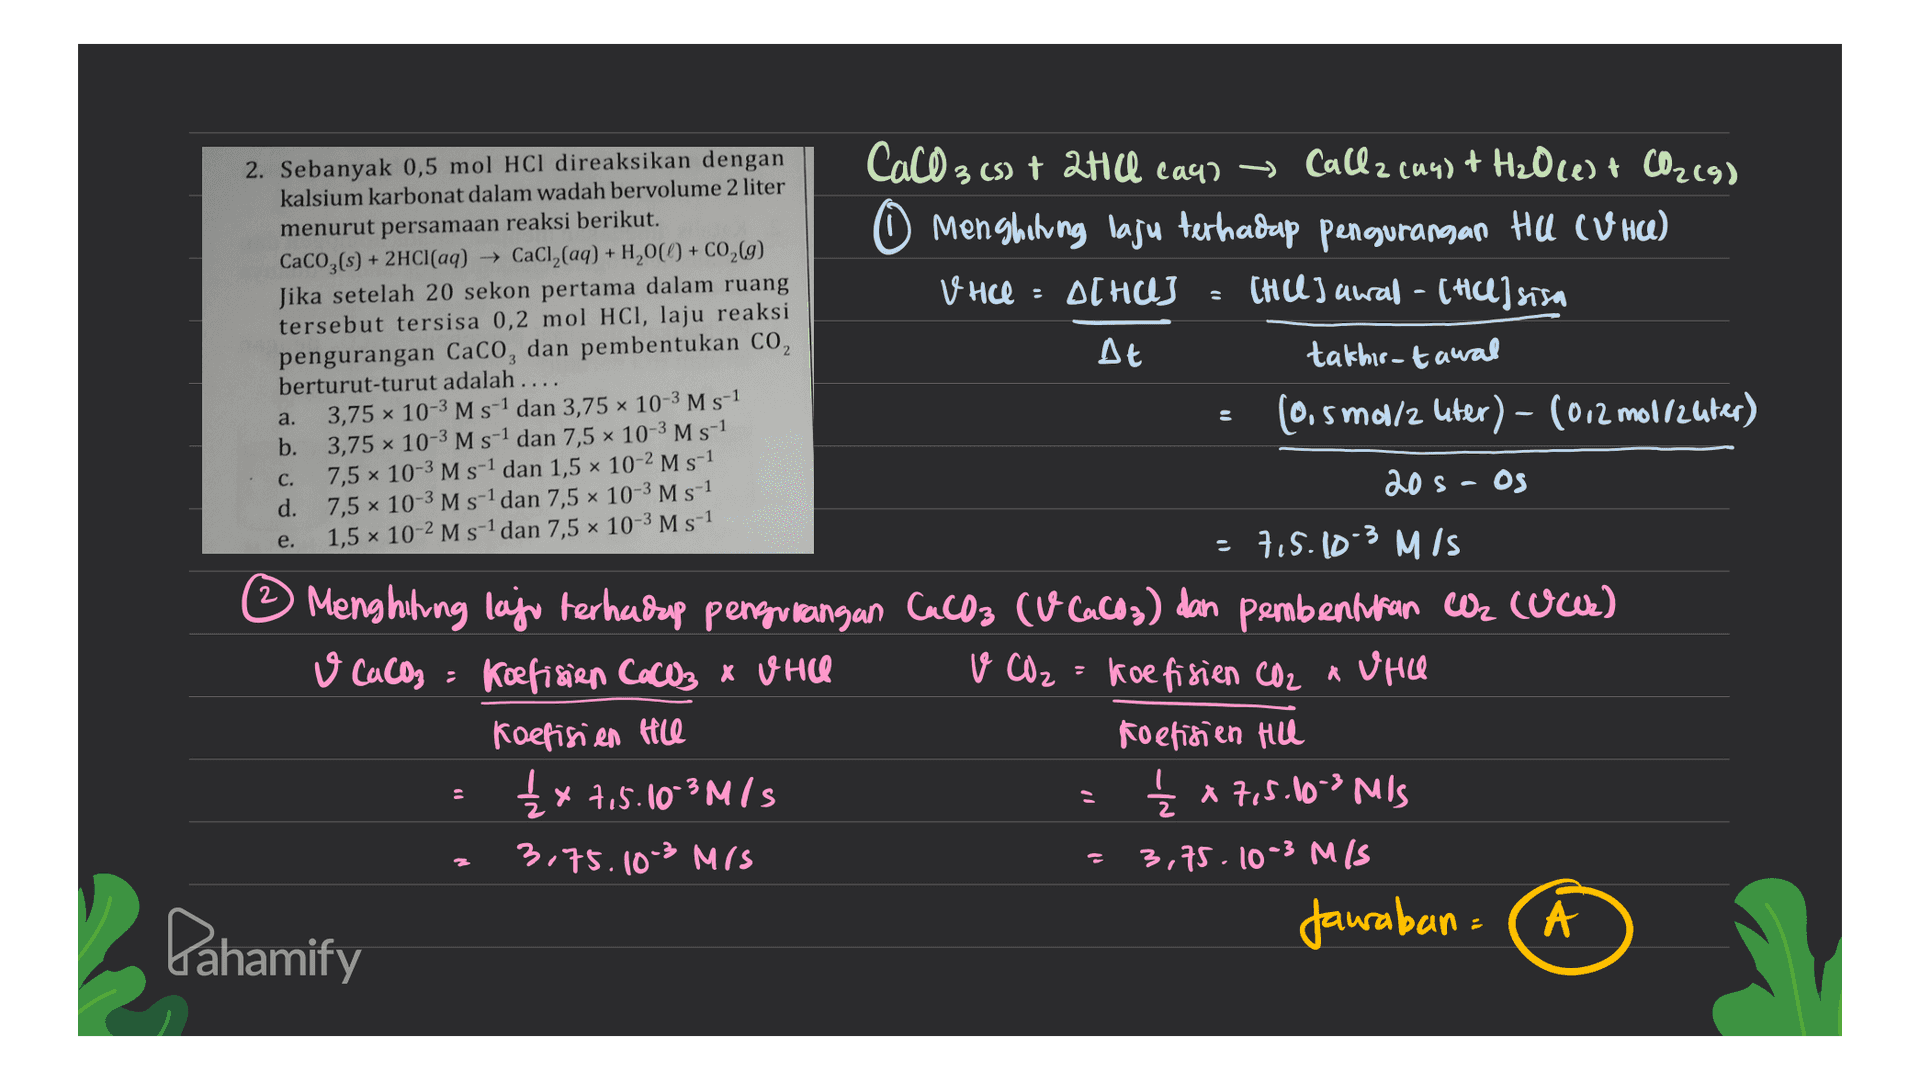 2. Sebanyak 0,5 mol HCl direaksikan dengan kalsium karbonat dalam wadah bervolume 2 liter menurut persamaan reaksi berikut. CaCO3(s) + 2HCl(aq) + CaCl2(aq) + H2,00 + CO2(g) Jika setelah 20 sekon pertama dalam ruang tersebut tersisa 0,2 mol HCl, laju reaksi pengurangan CaCO, dan pembentukan CO, berturut-turut adalah .... 3,75 10-3 M s-1 dan 3,75 10-3 M s-1 b. 3,75 x 10-3 M s-1 dan 7,5 x 10-3 M s-1 7,5 x 10-3 M s-1 dan 1,5 x 10-2 M s-1 d. 7,5 x 10-3 M s-1 dan 7,5 x 10-3 M s-1 1,5 x 10-2 M s-1 dan 7,5 x 10-3 M s-1 CaCO 3 (s) + 2Hill caur ~ Callz (44) + H20 (1) + CO2(9) O Menghitung laju terhadap pengurangan HU CUHU) V HCl : ACHUJ CHUL) awal - [HU] sisa At takhir-tawal (0.5 mol/z uter) - (012 mollzuter) a. C. 20 S - OS e. 7.5.10-3 MIS © Menghitung laju terhadap pengurangan Cacos cu cacos) dan pembenturan C cuwe) V CaCO3 = koefisien CaCO3 x WHIC v CO₂ = koefisien CO2 a Vie Koefisien te Koefisien Hill £x 7,5.10-3M/S { x 7,5.103 MIS 3.75.10-3 MIS 3,75. 10-3 M/S Jawaban Pahamify 